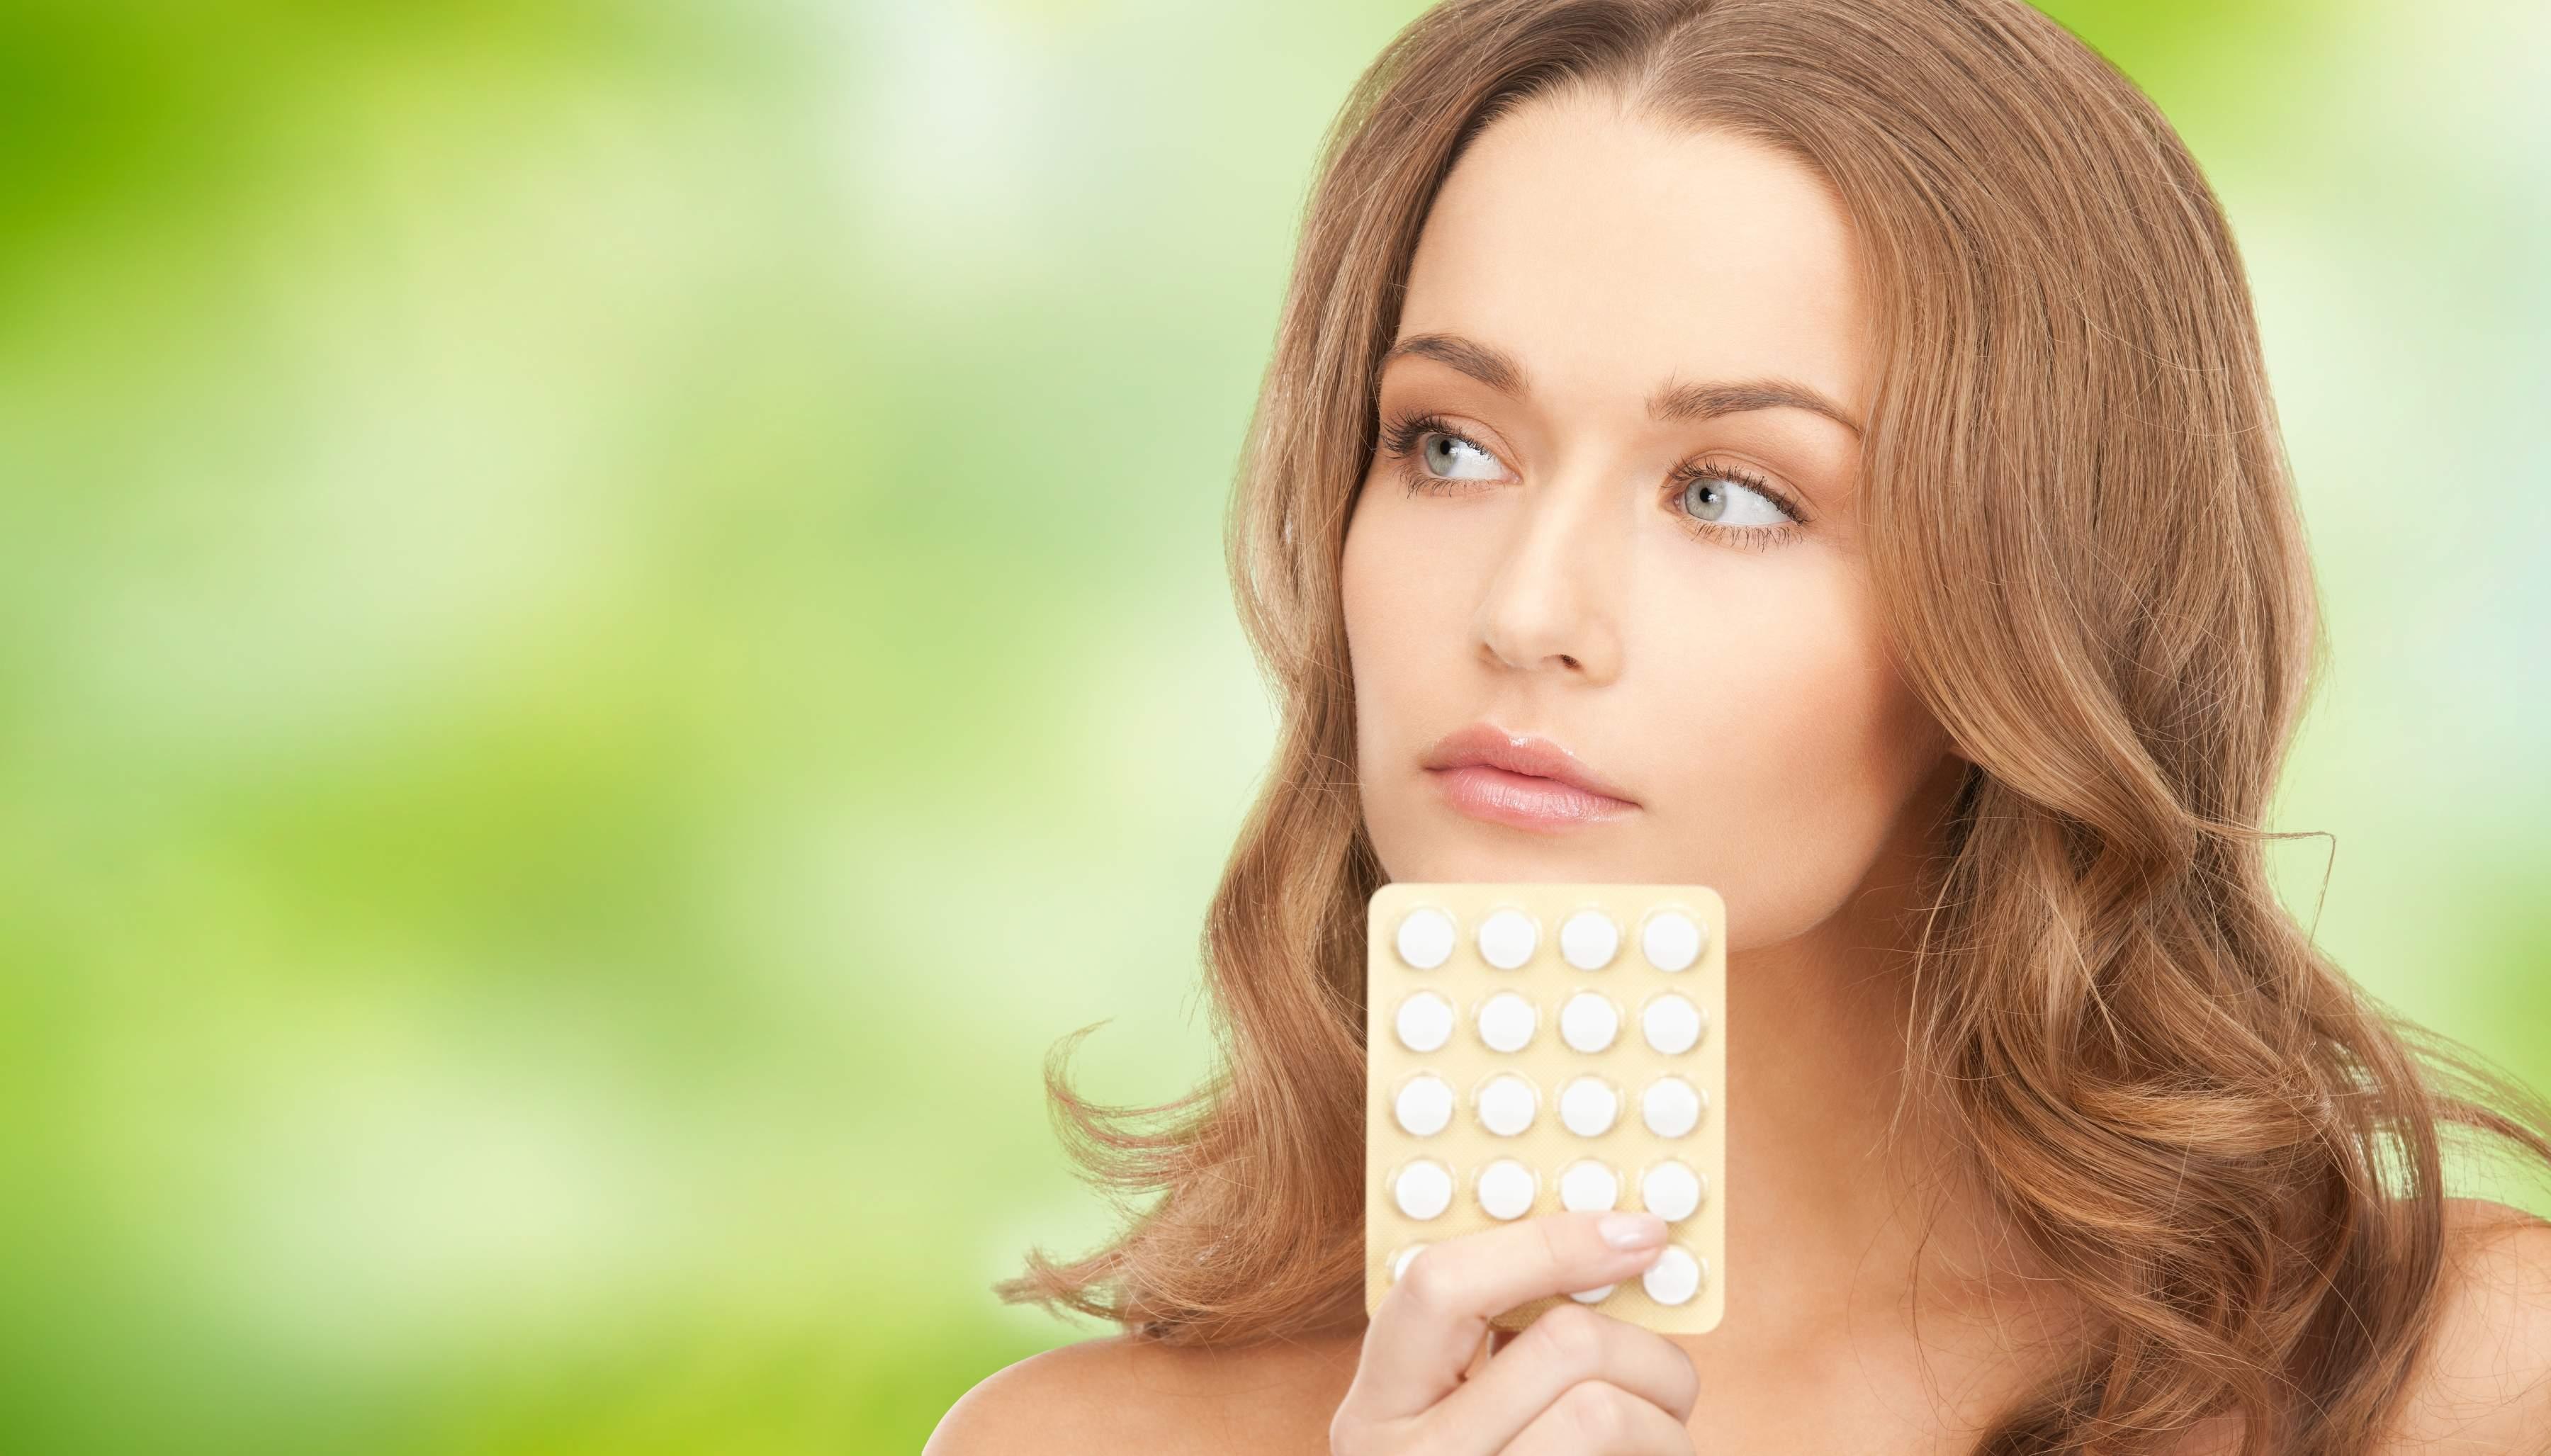 Odgađanje menstrualnog ciklusa: Oprezno koristite hormonalne pilule